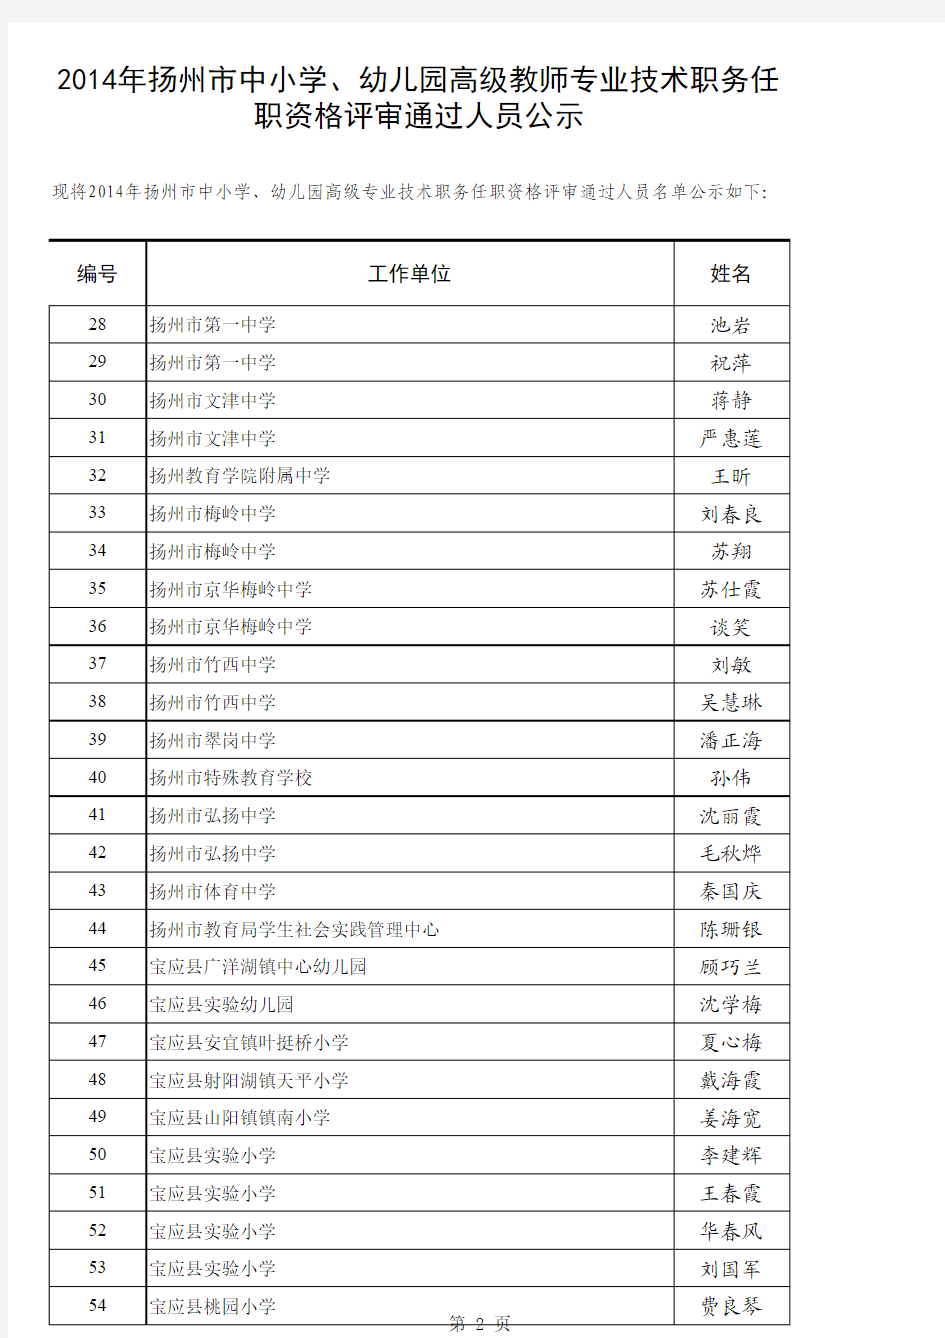 2014年扬州市中小学高级教师评审结果公示名单